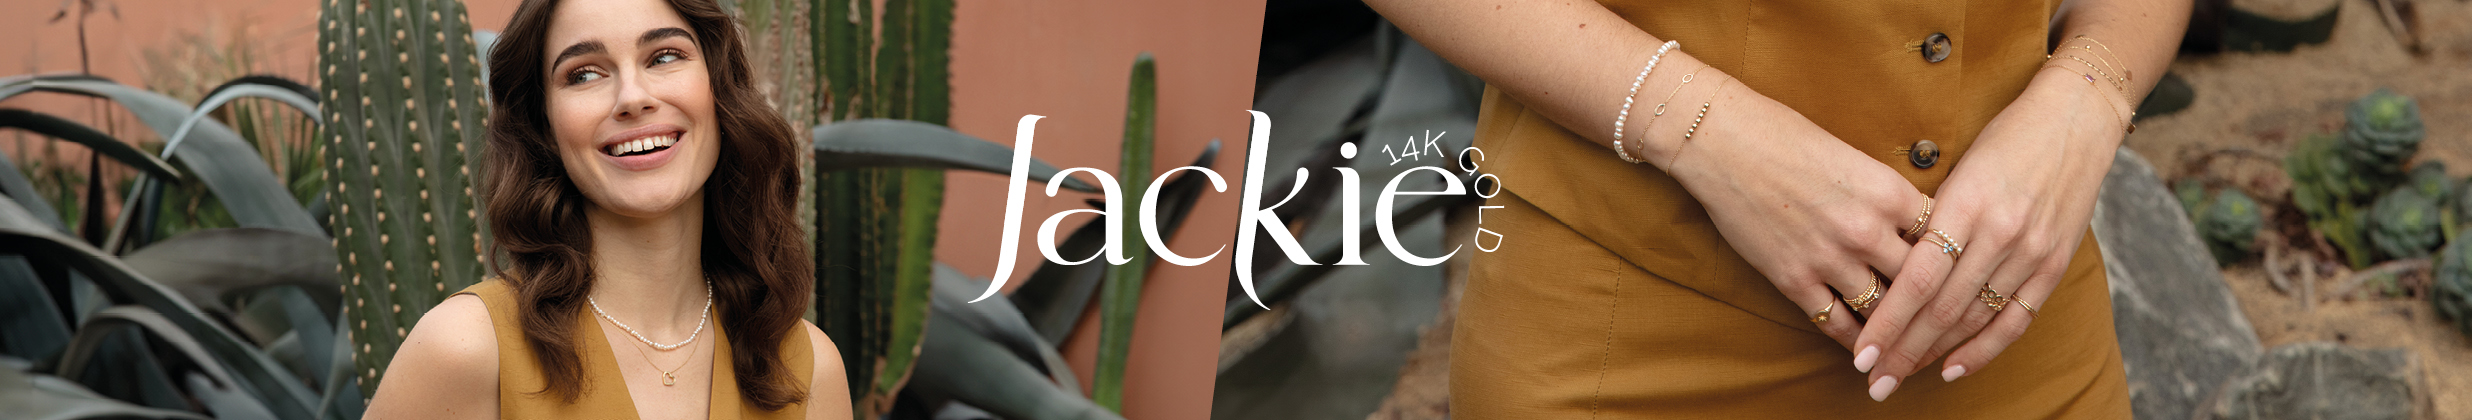 seasonal banner jackie